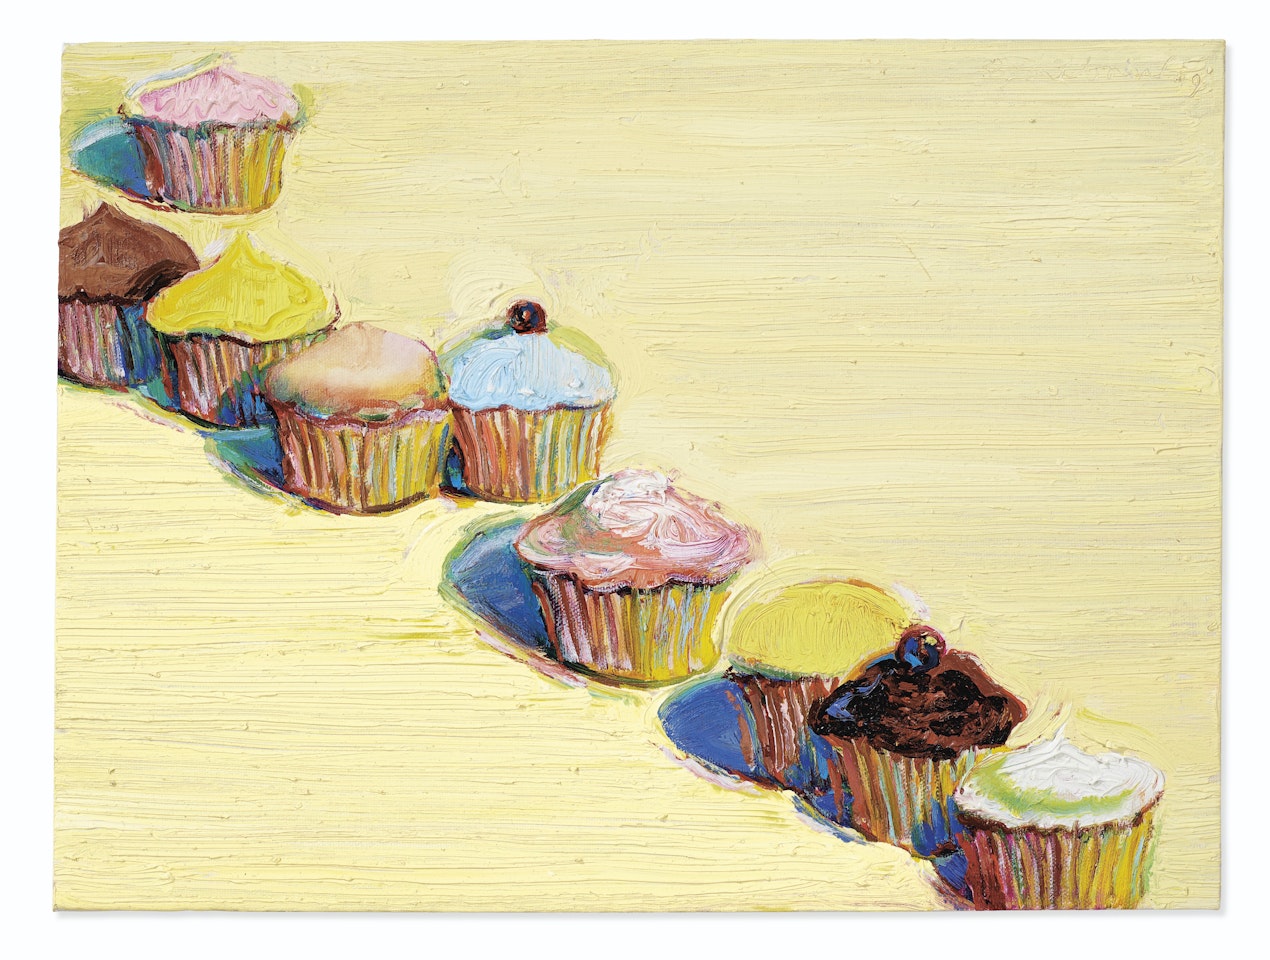 Nine Cupcakes by Wayne Thiebaud